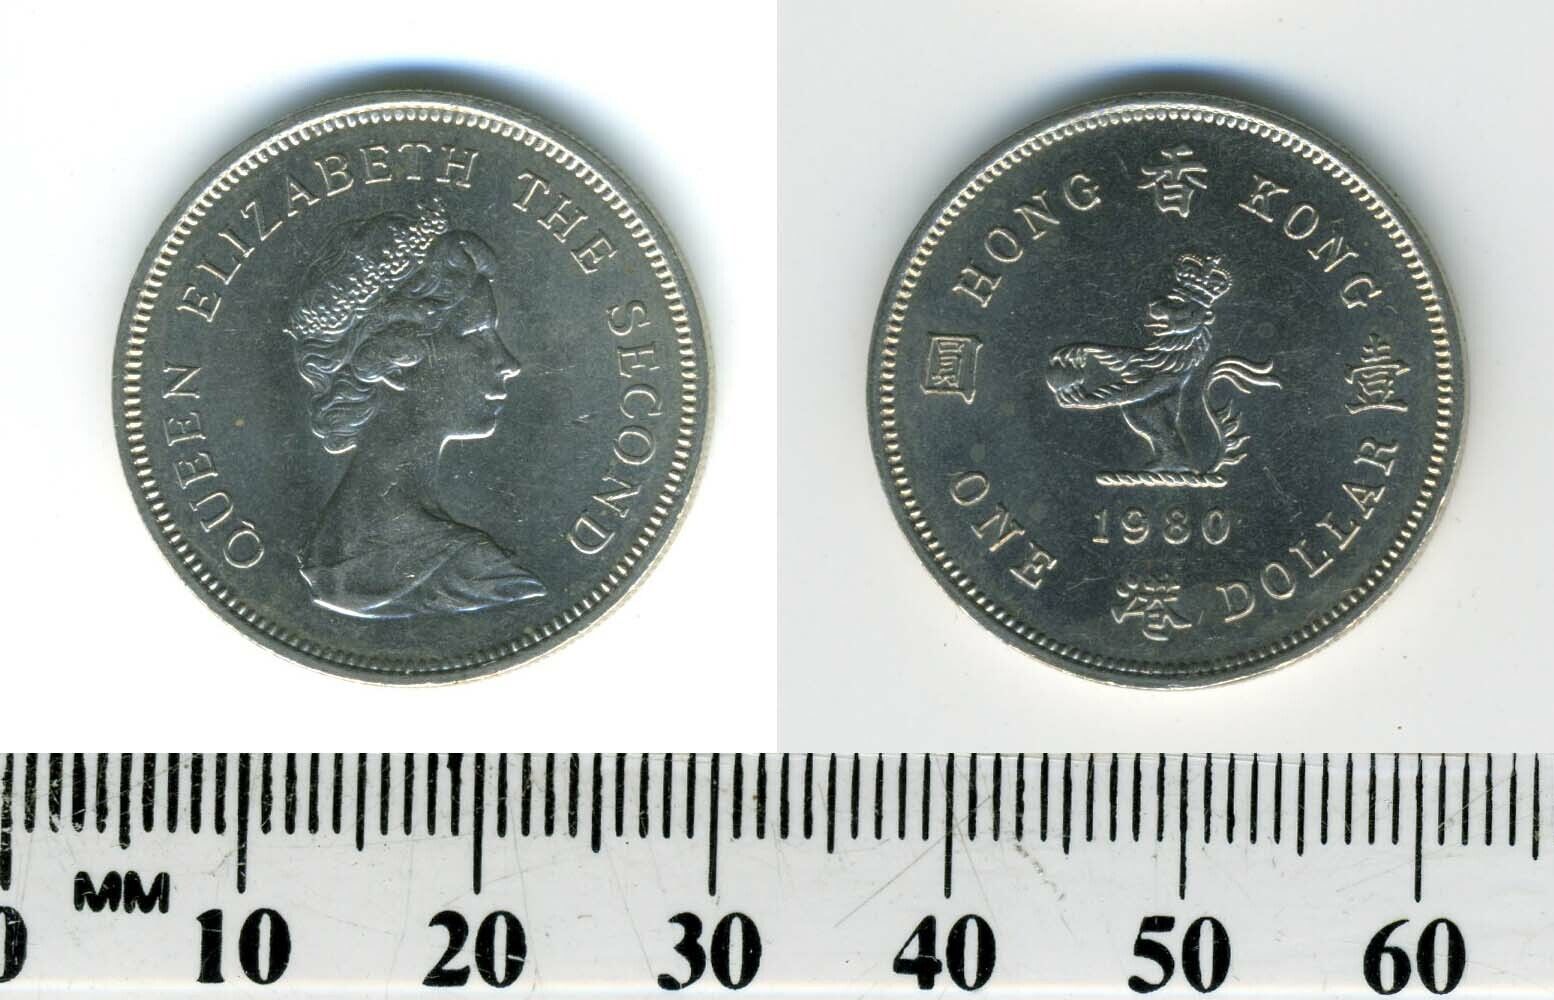 British Hong Kong 1980 - 1 Dollar Copper-Nickel Coin - Queen Elizabeth II